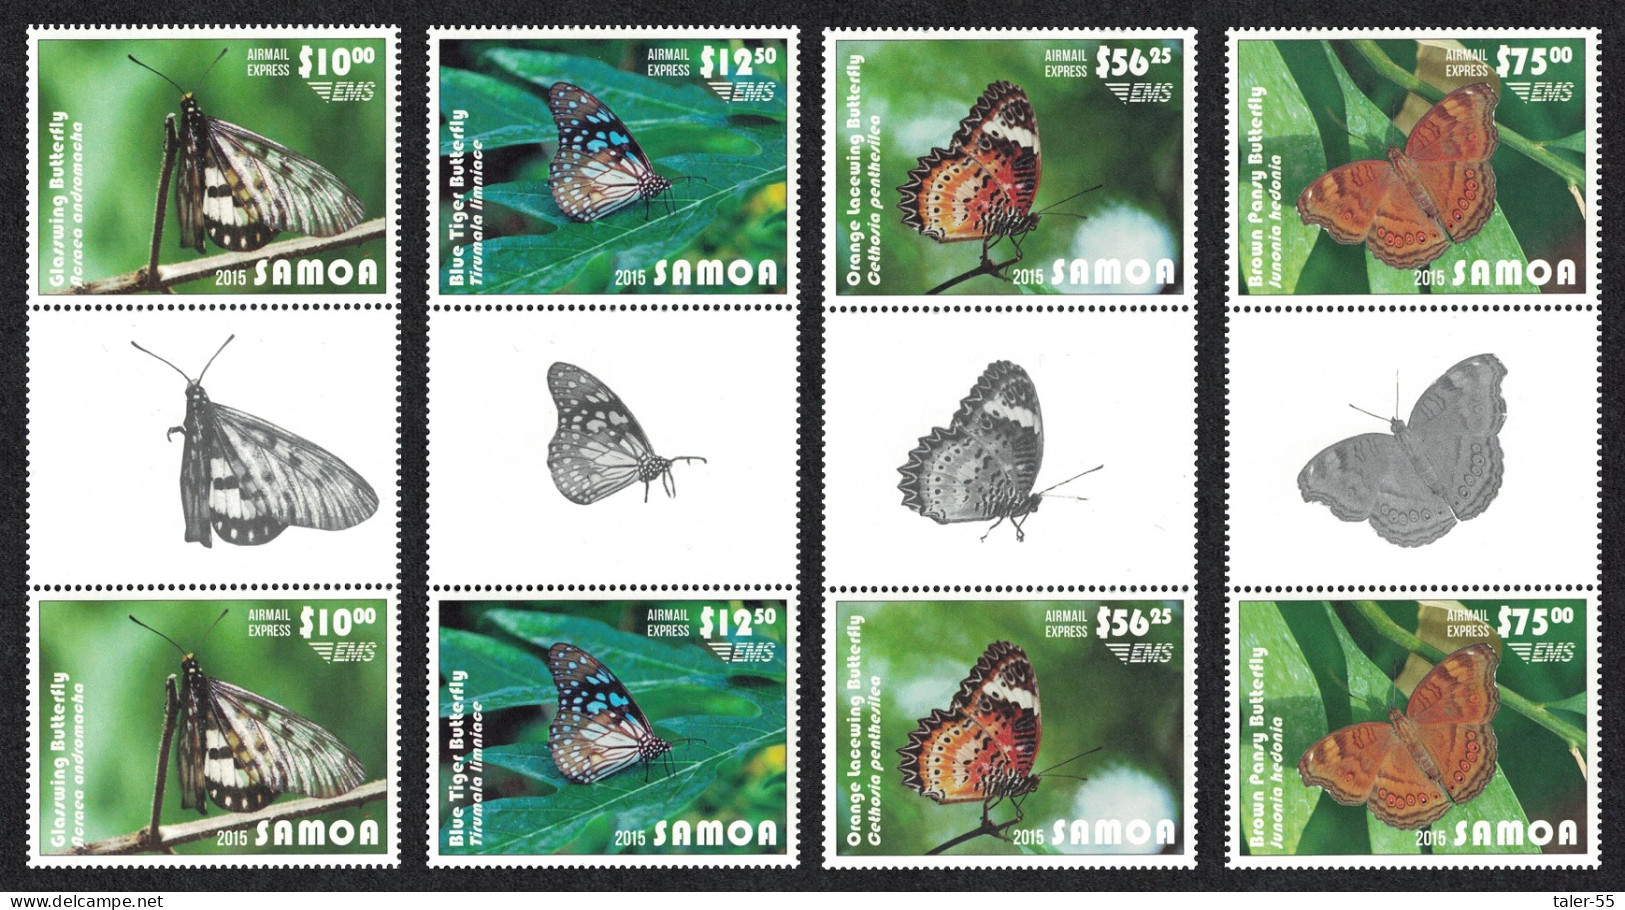 Samoa Butterflies Express Mail 4v Gutter Pairs Face Value £90+ 2015 MNH SG#E1-E4 - Samoa